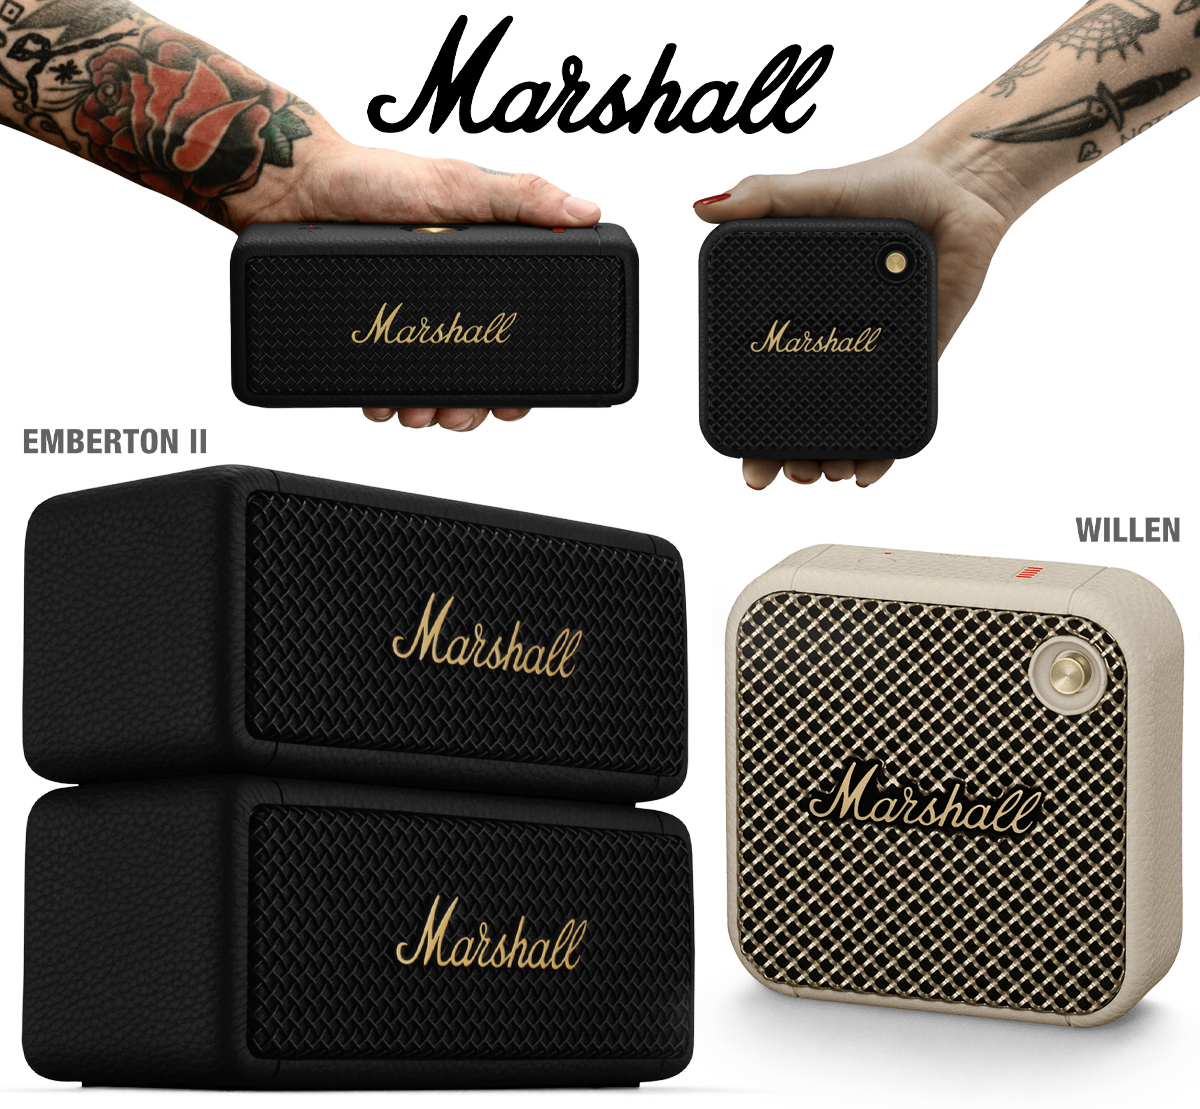 Novas Caixas de Som Marshall: Ultra-Portátil Willen e Emberton II